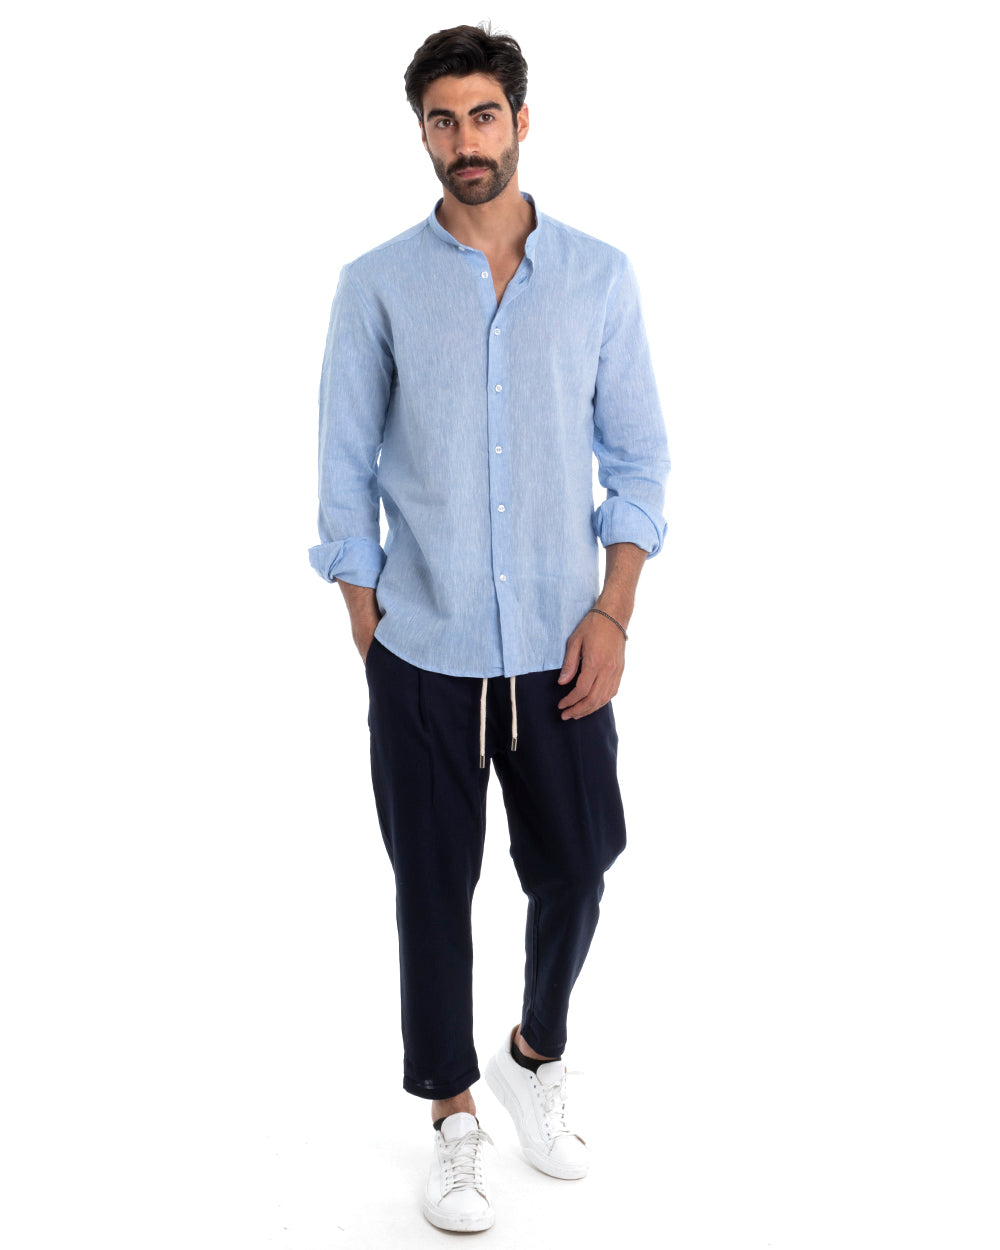 Men's Mandarin Collar Shirt Long Sleeve Regular Fit Tailored Melange Linen Light Blue GIOSAL-C2388A